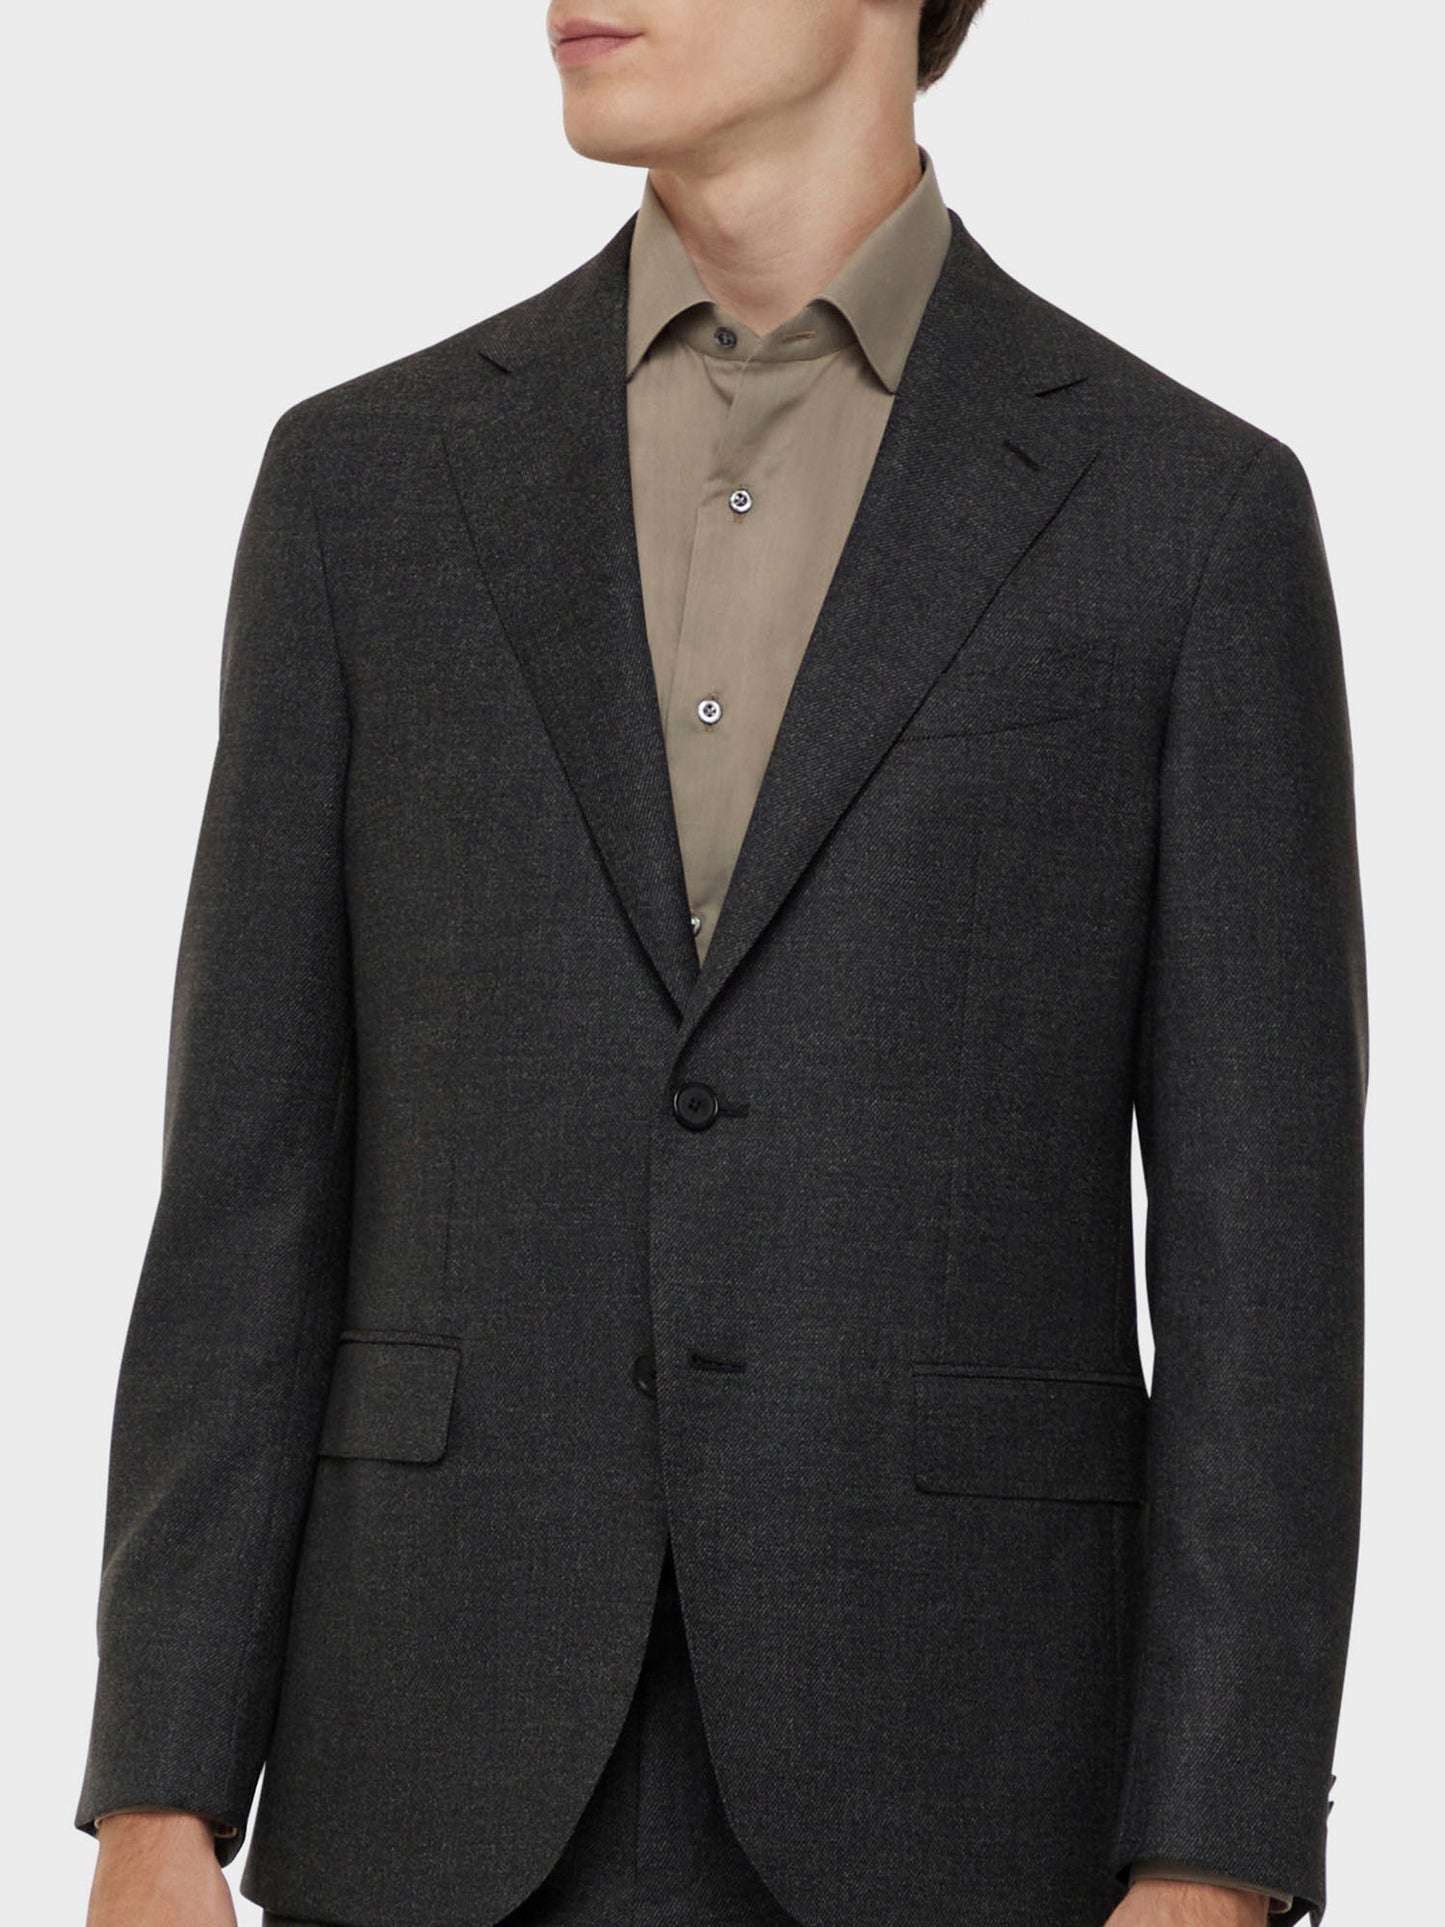 Caruso Menswear Abbigliamento Uomo Abito aida monopetto in lana 130s marrone drop 7R dettaglio giacca